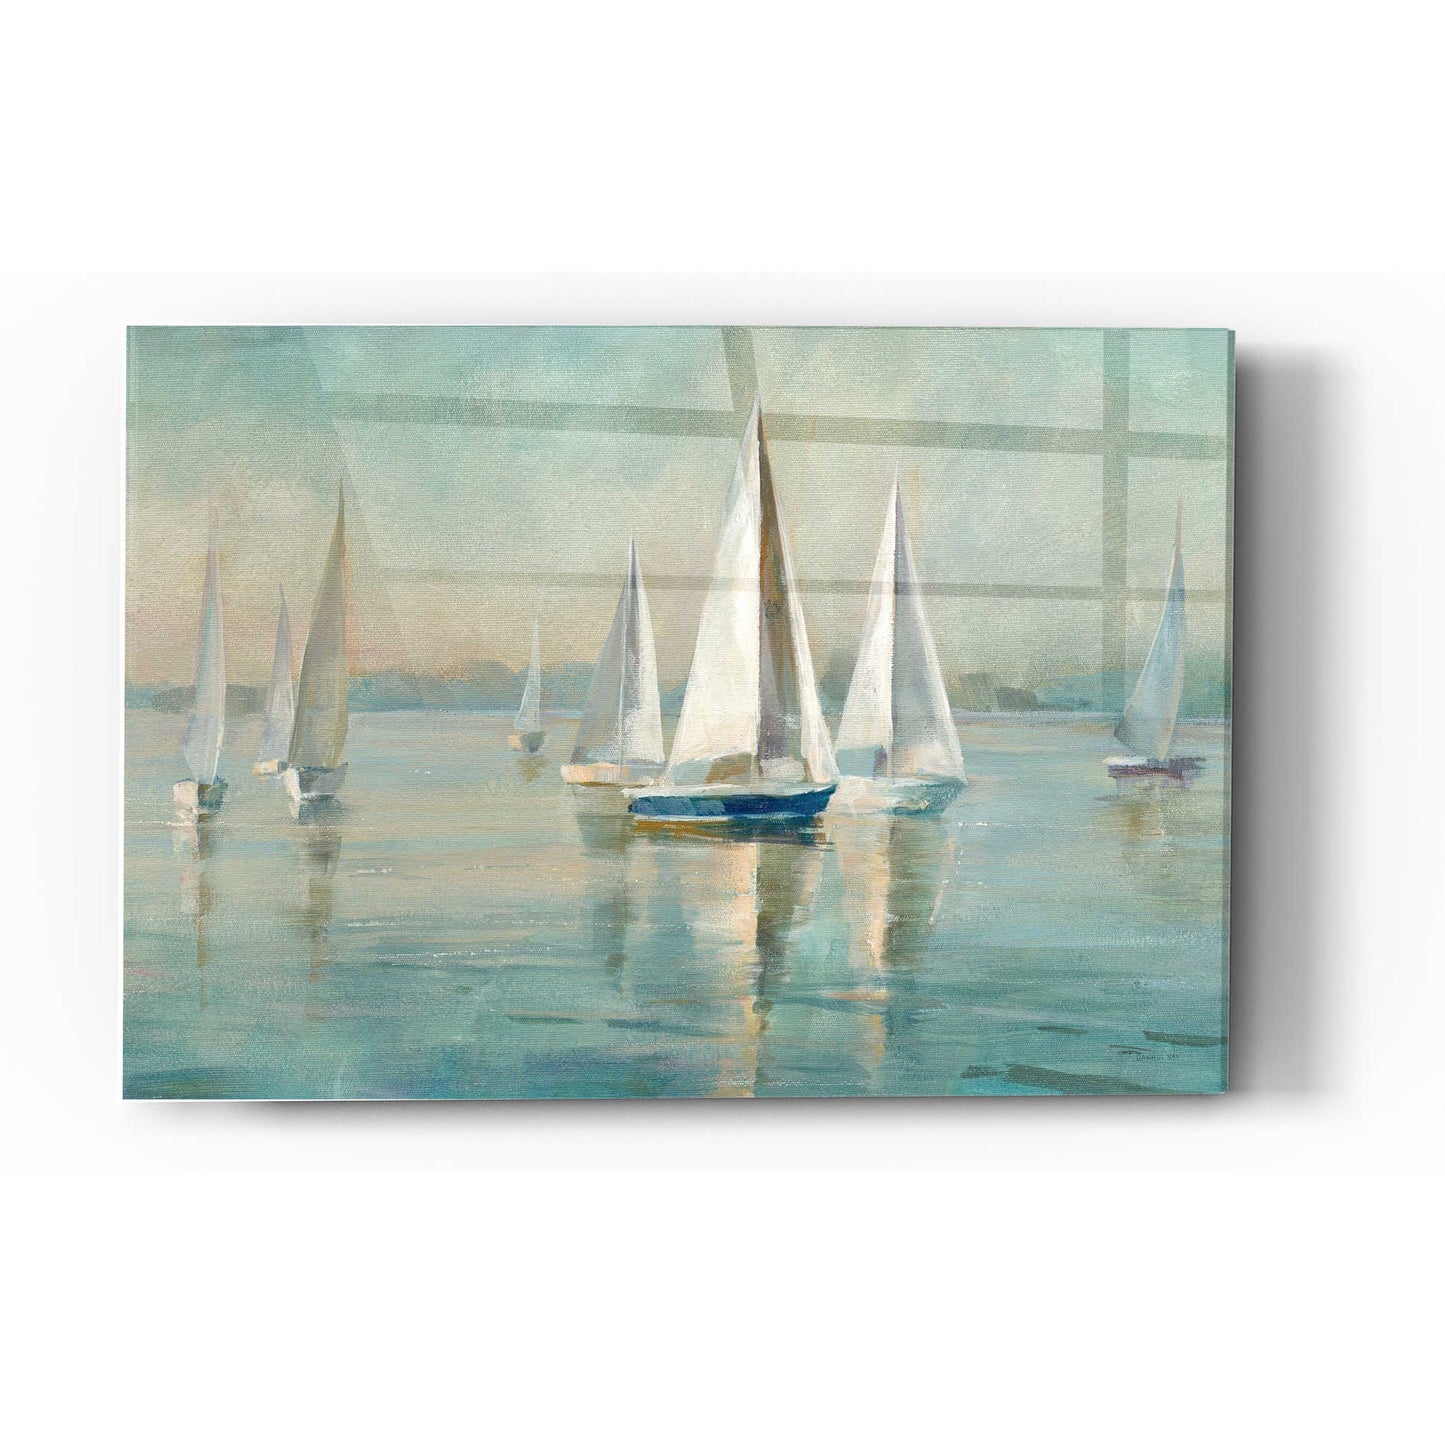 Epic Art 'Sailboats At Sunrise' by Danhui Nai, Acrylic Glass Wall Art,16x24